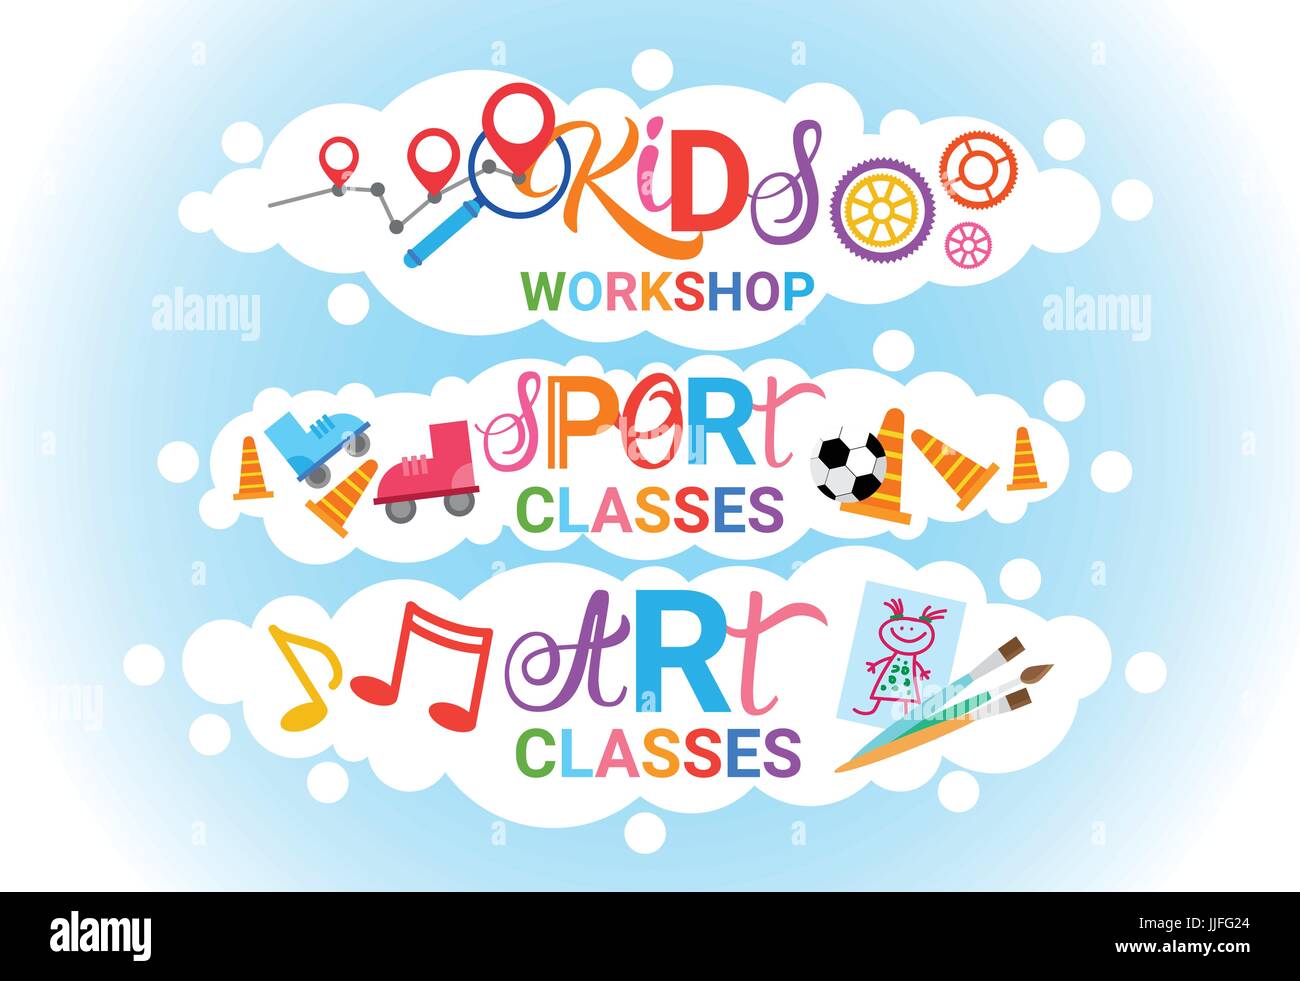 Art Classes For Kids Logo Workshop Creative Artistic School For Children Banner Stock Vector